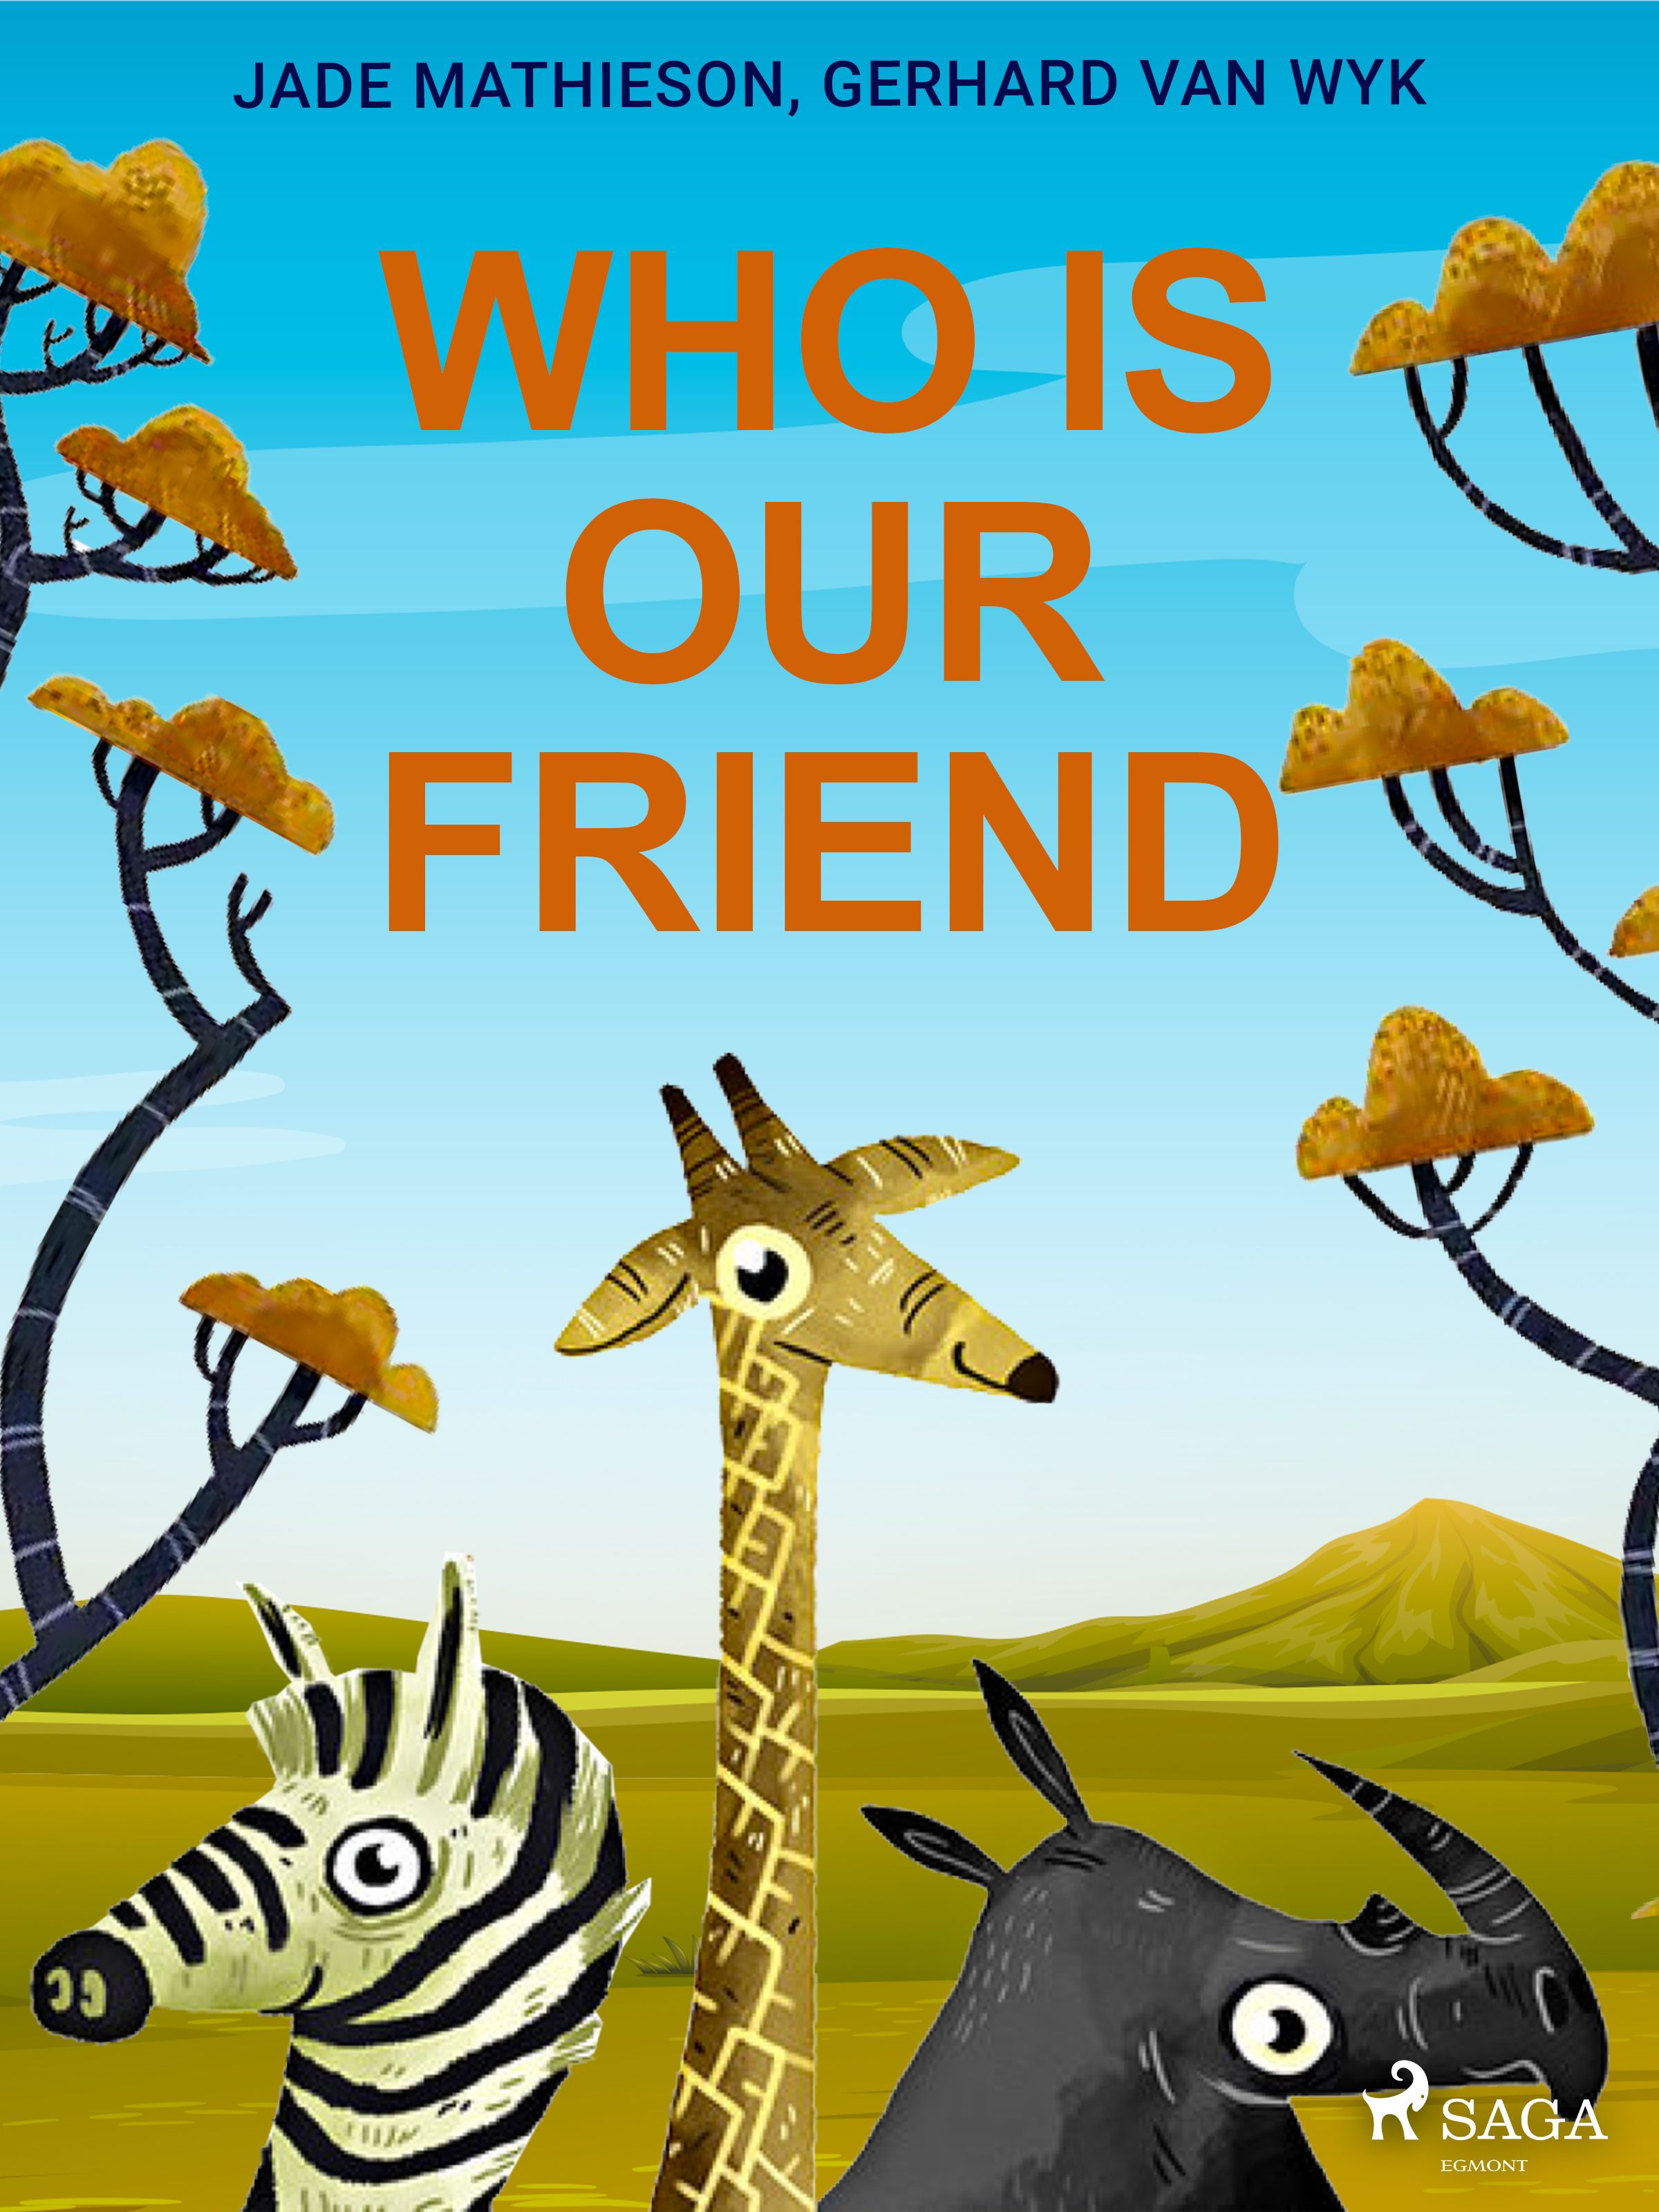 Who is Our Friend, eBook by Jade Mathieson, Gerhard Van Wyk